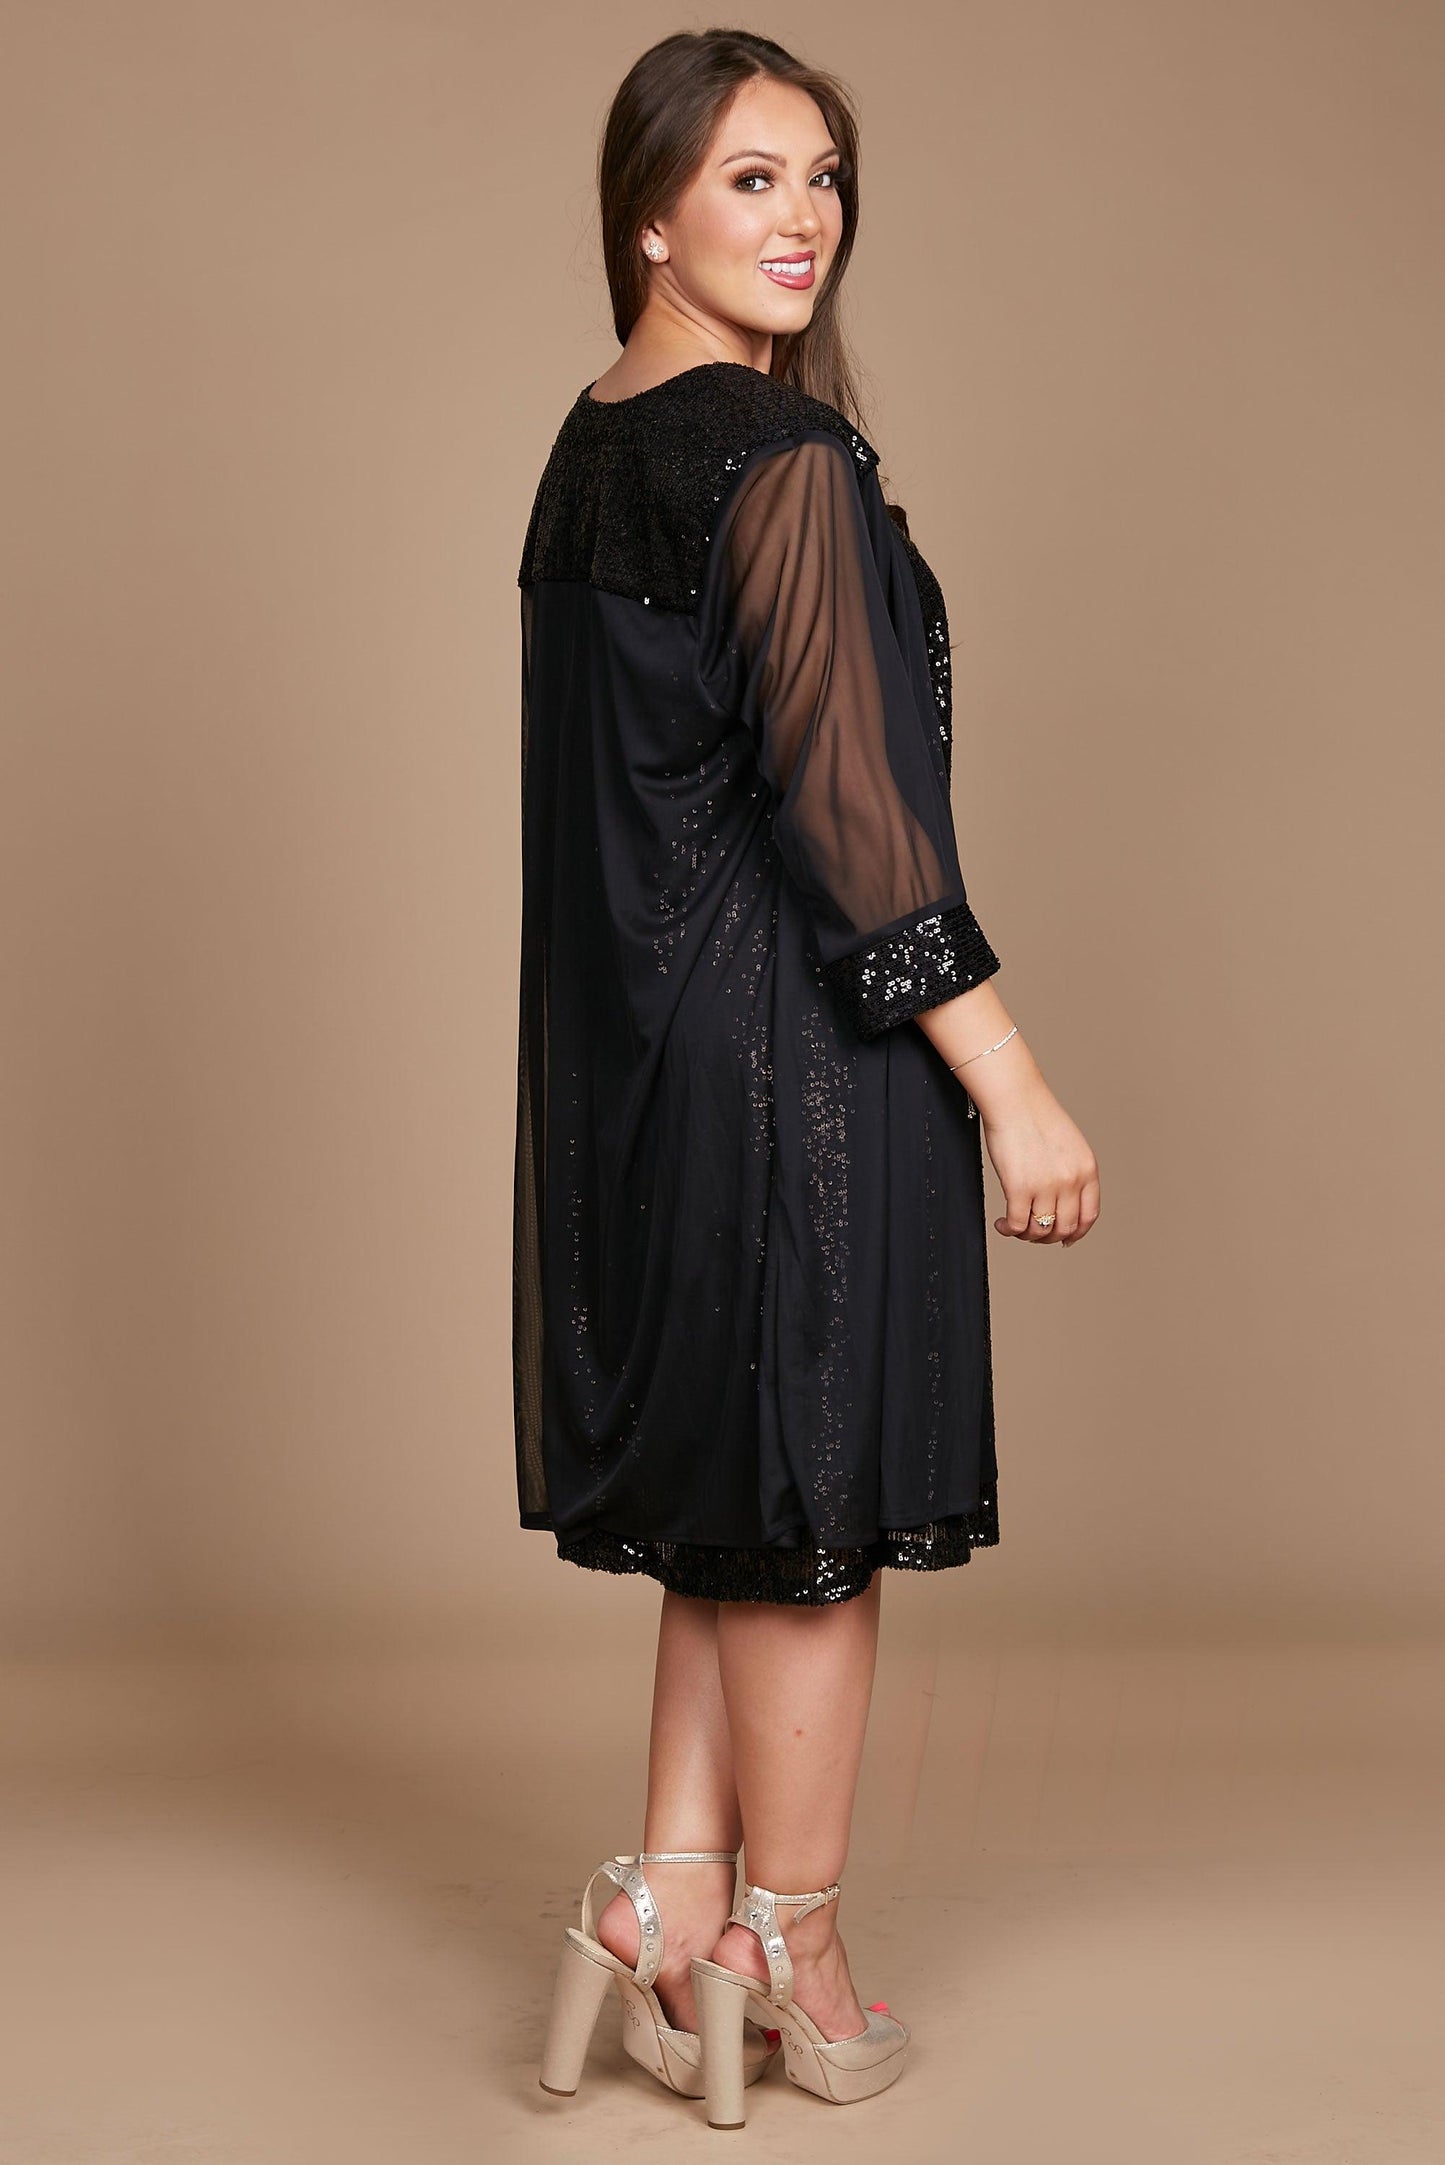 R&M Richards Short Black Formal Dress Sale - The Dress Outlet